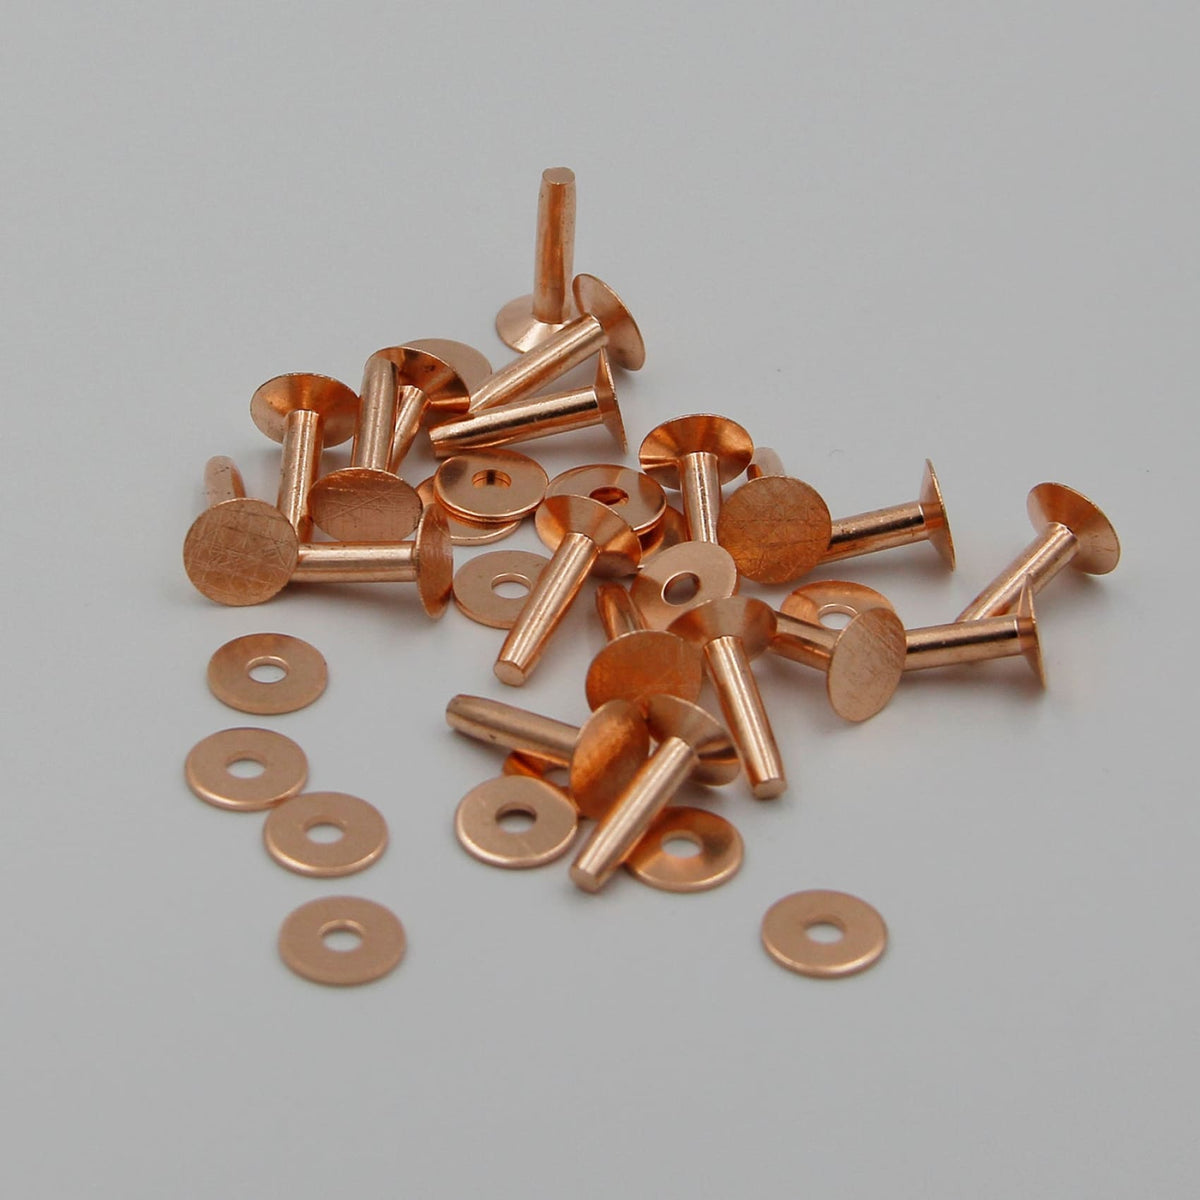 bobasndm Windbreaker Fastener Rivets Durable Copper Rivet Set for Leather  Crafting 